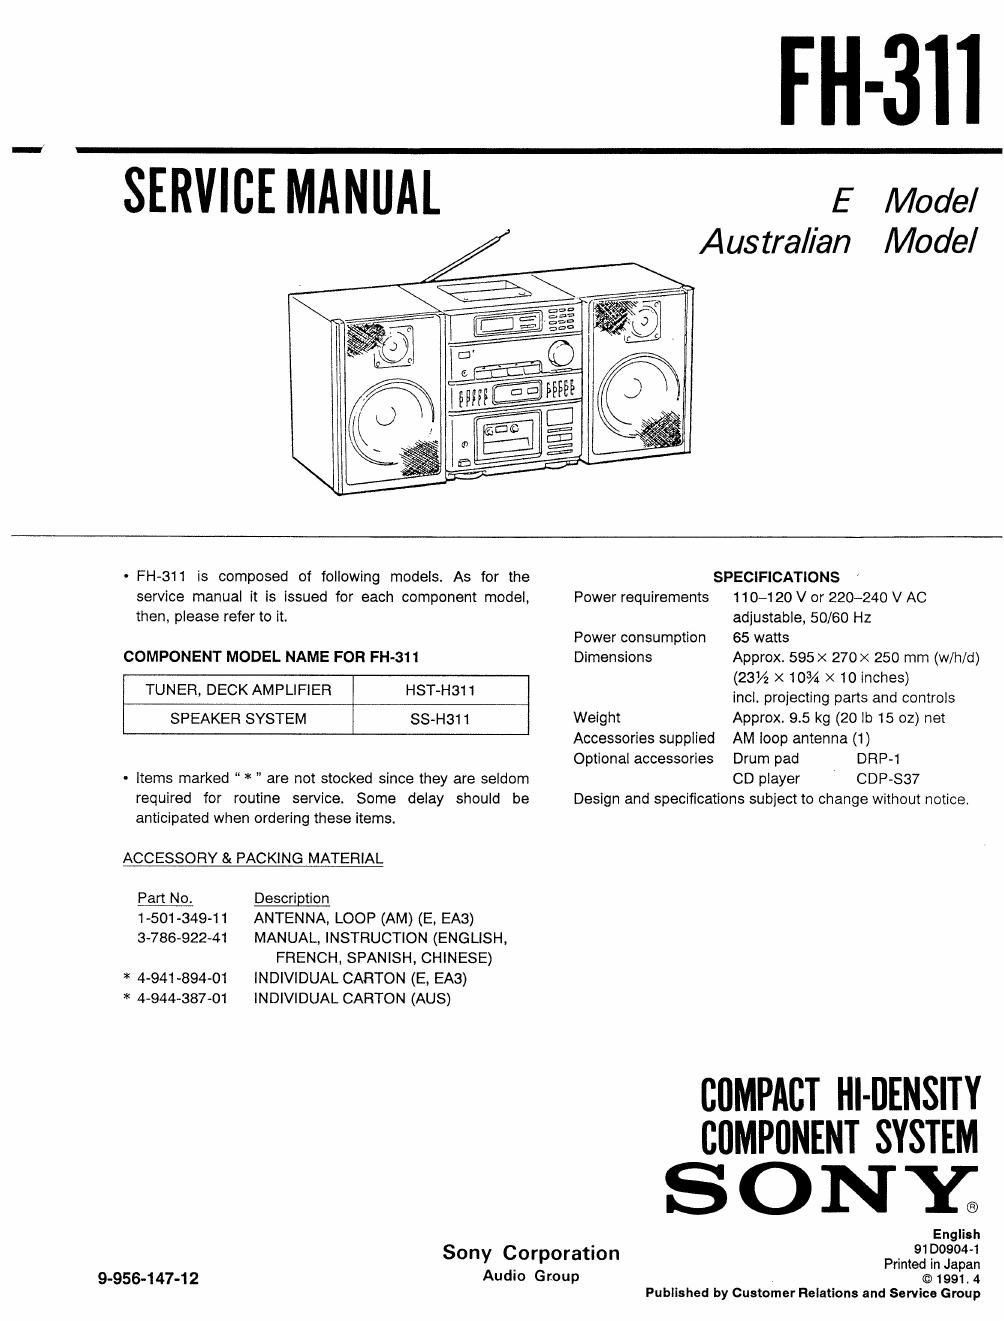 sony fh 311 service manual